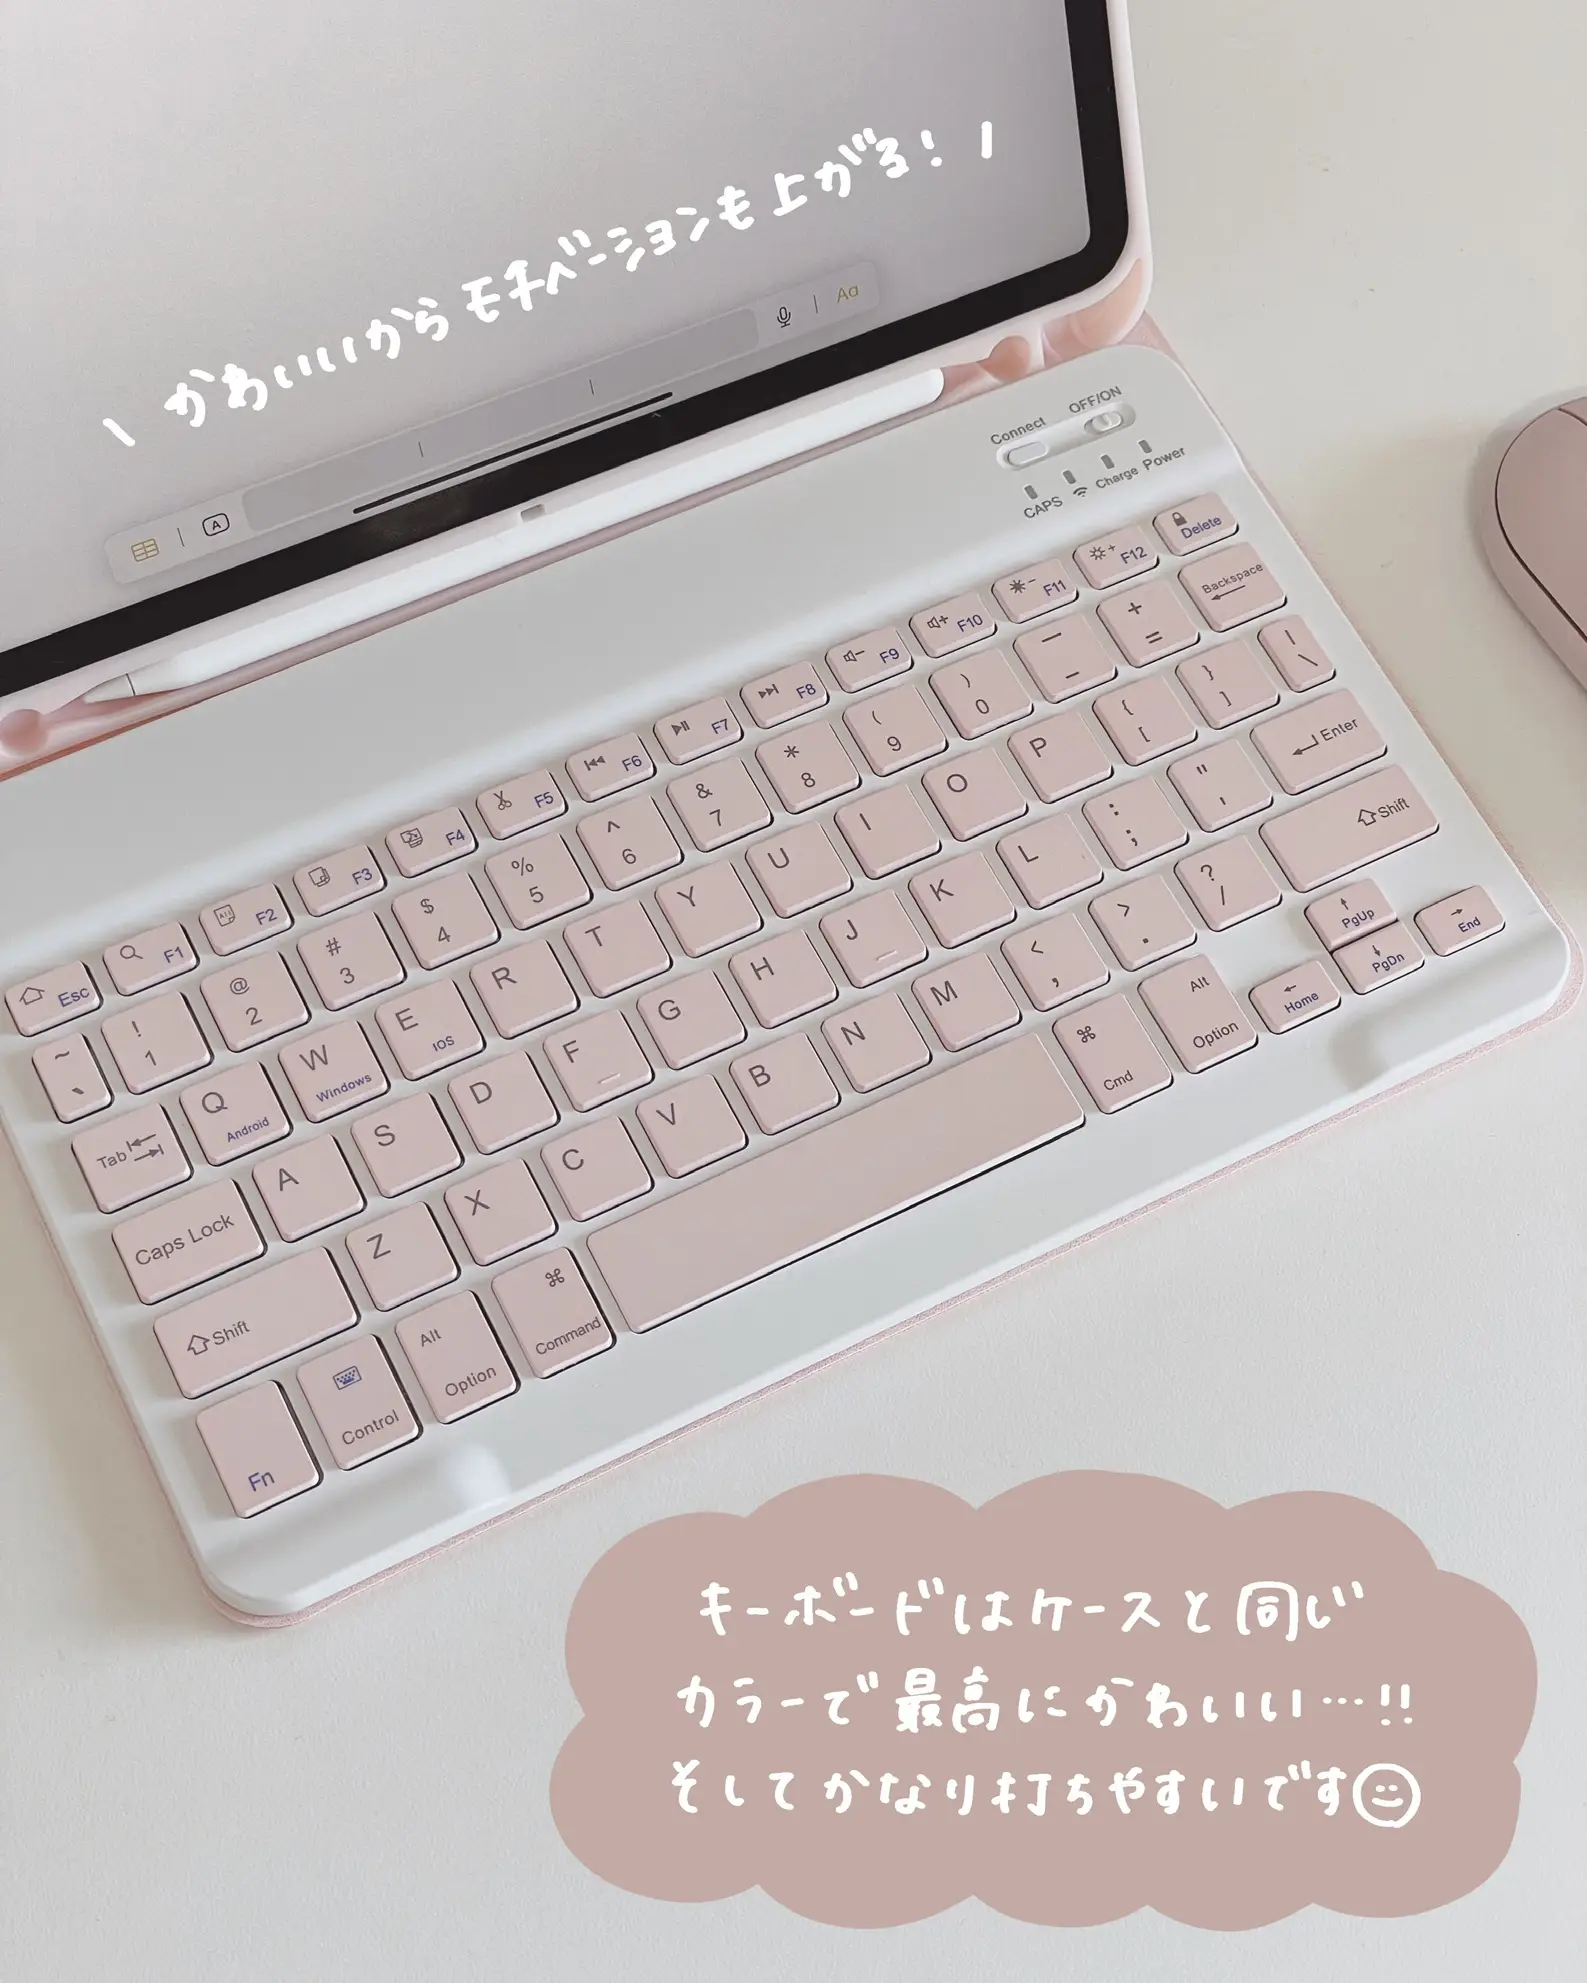 めちゃくちゃかわいいキーボード付きiPadケース🐰   | 亀山ルカ